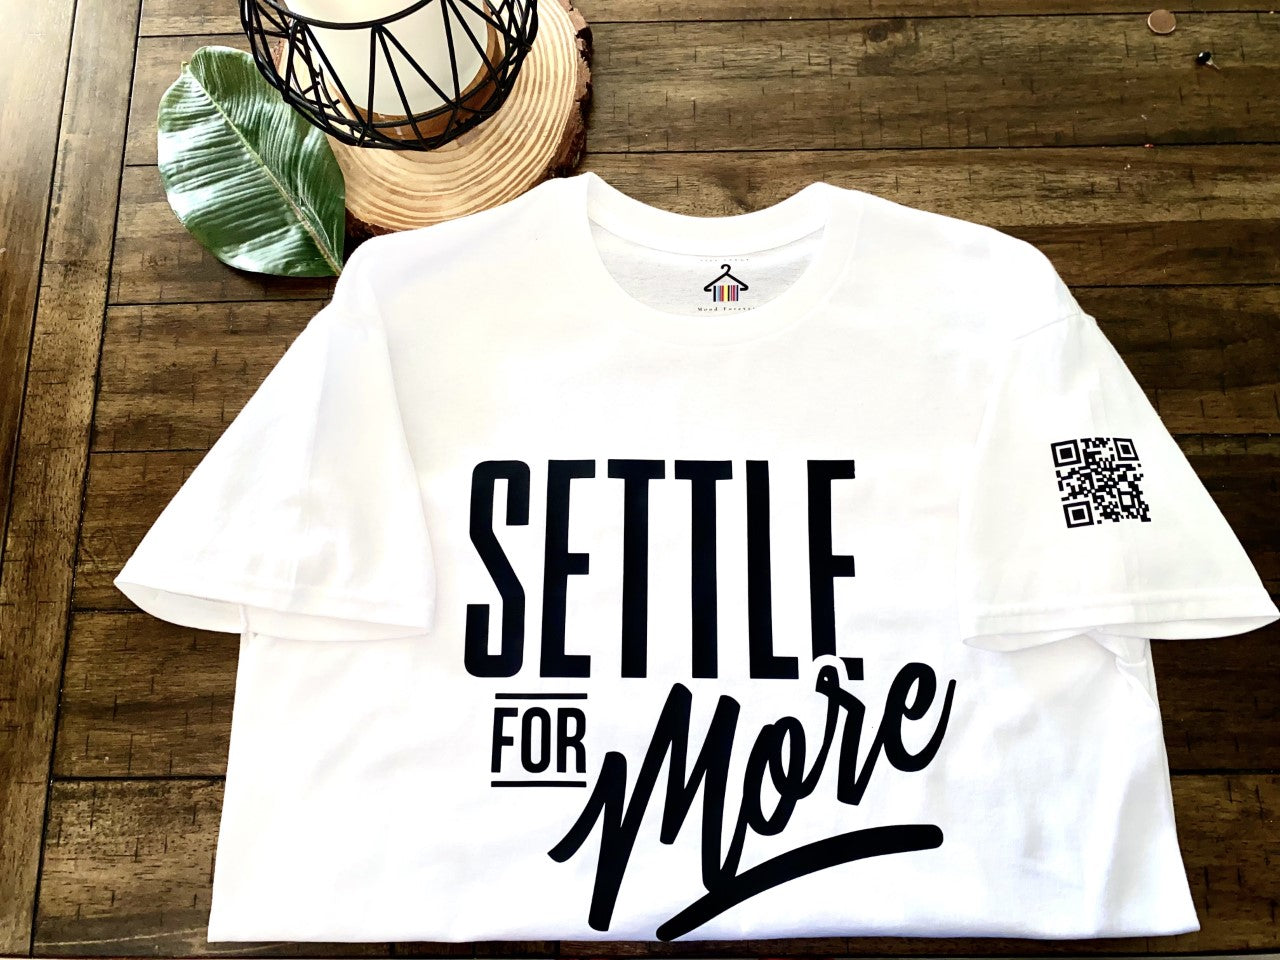 "Settle For More" - Tshirt